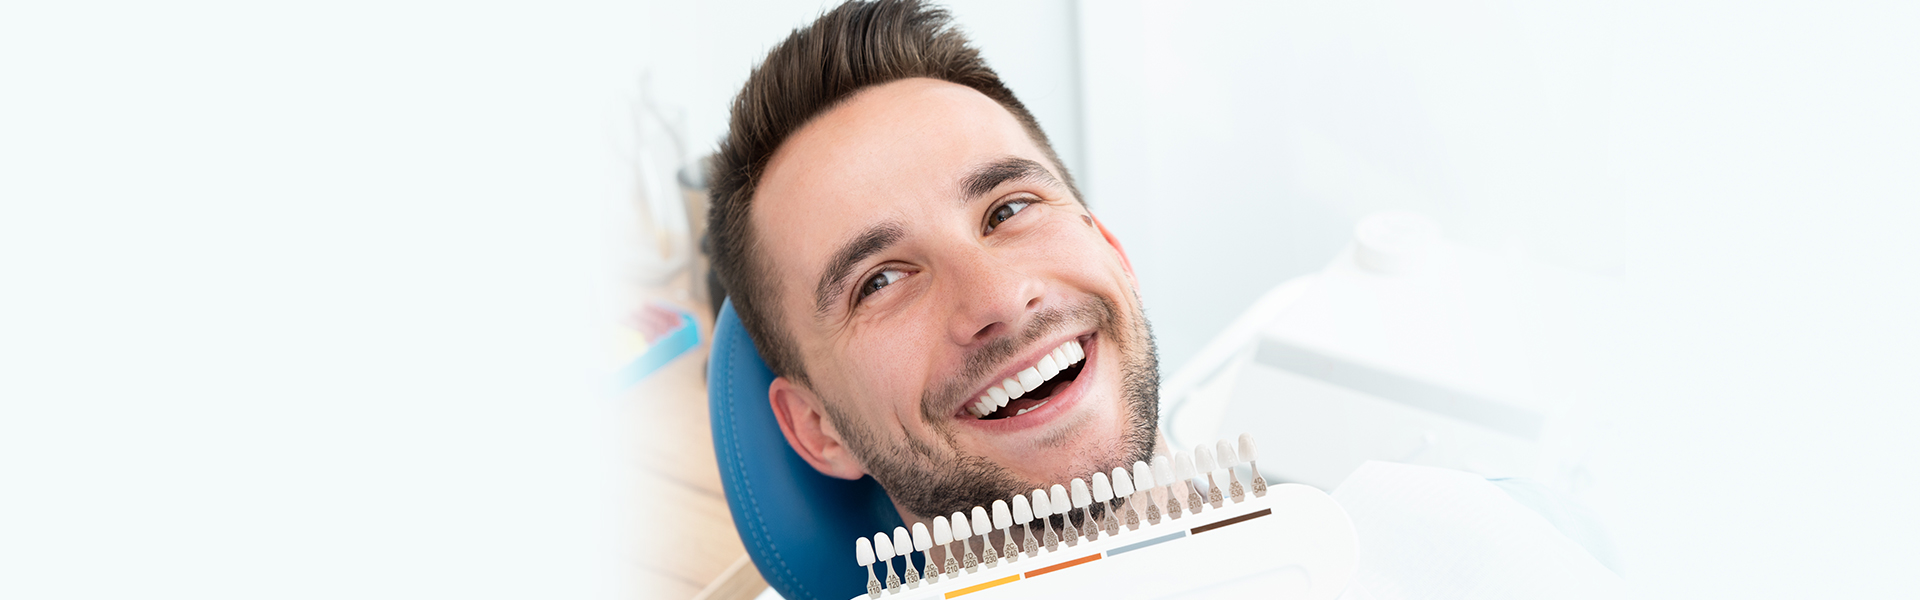 Dental Veneers for Cosmetic Dentistry